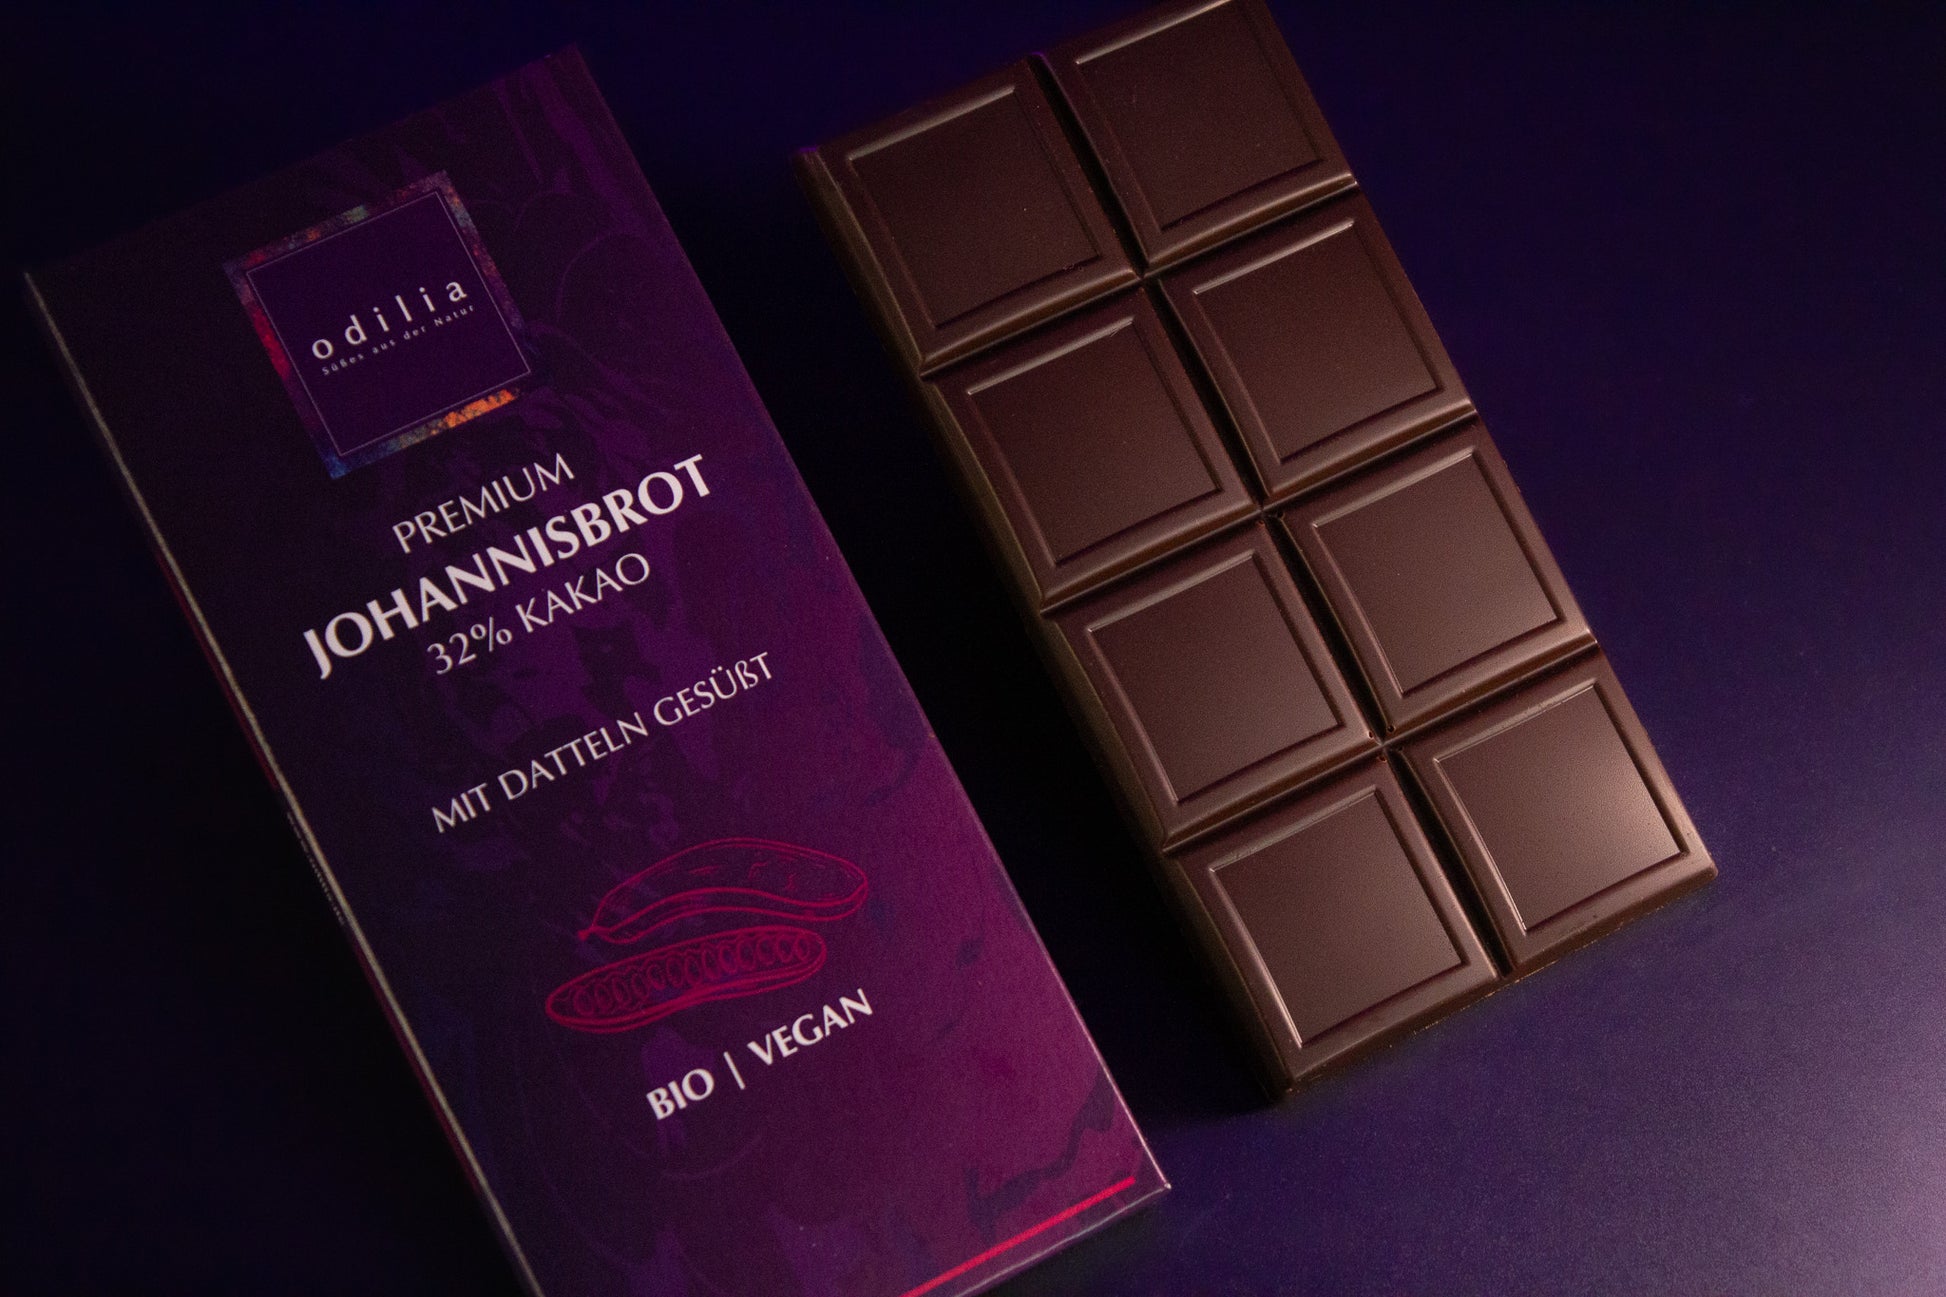 Die ausgepackte 70g Tafel der Premium Johannisbrot Schokolade liegt auf einer Unterlage, Fokus auf Schokolade und Johannisbrot.